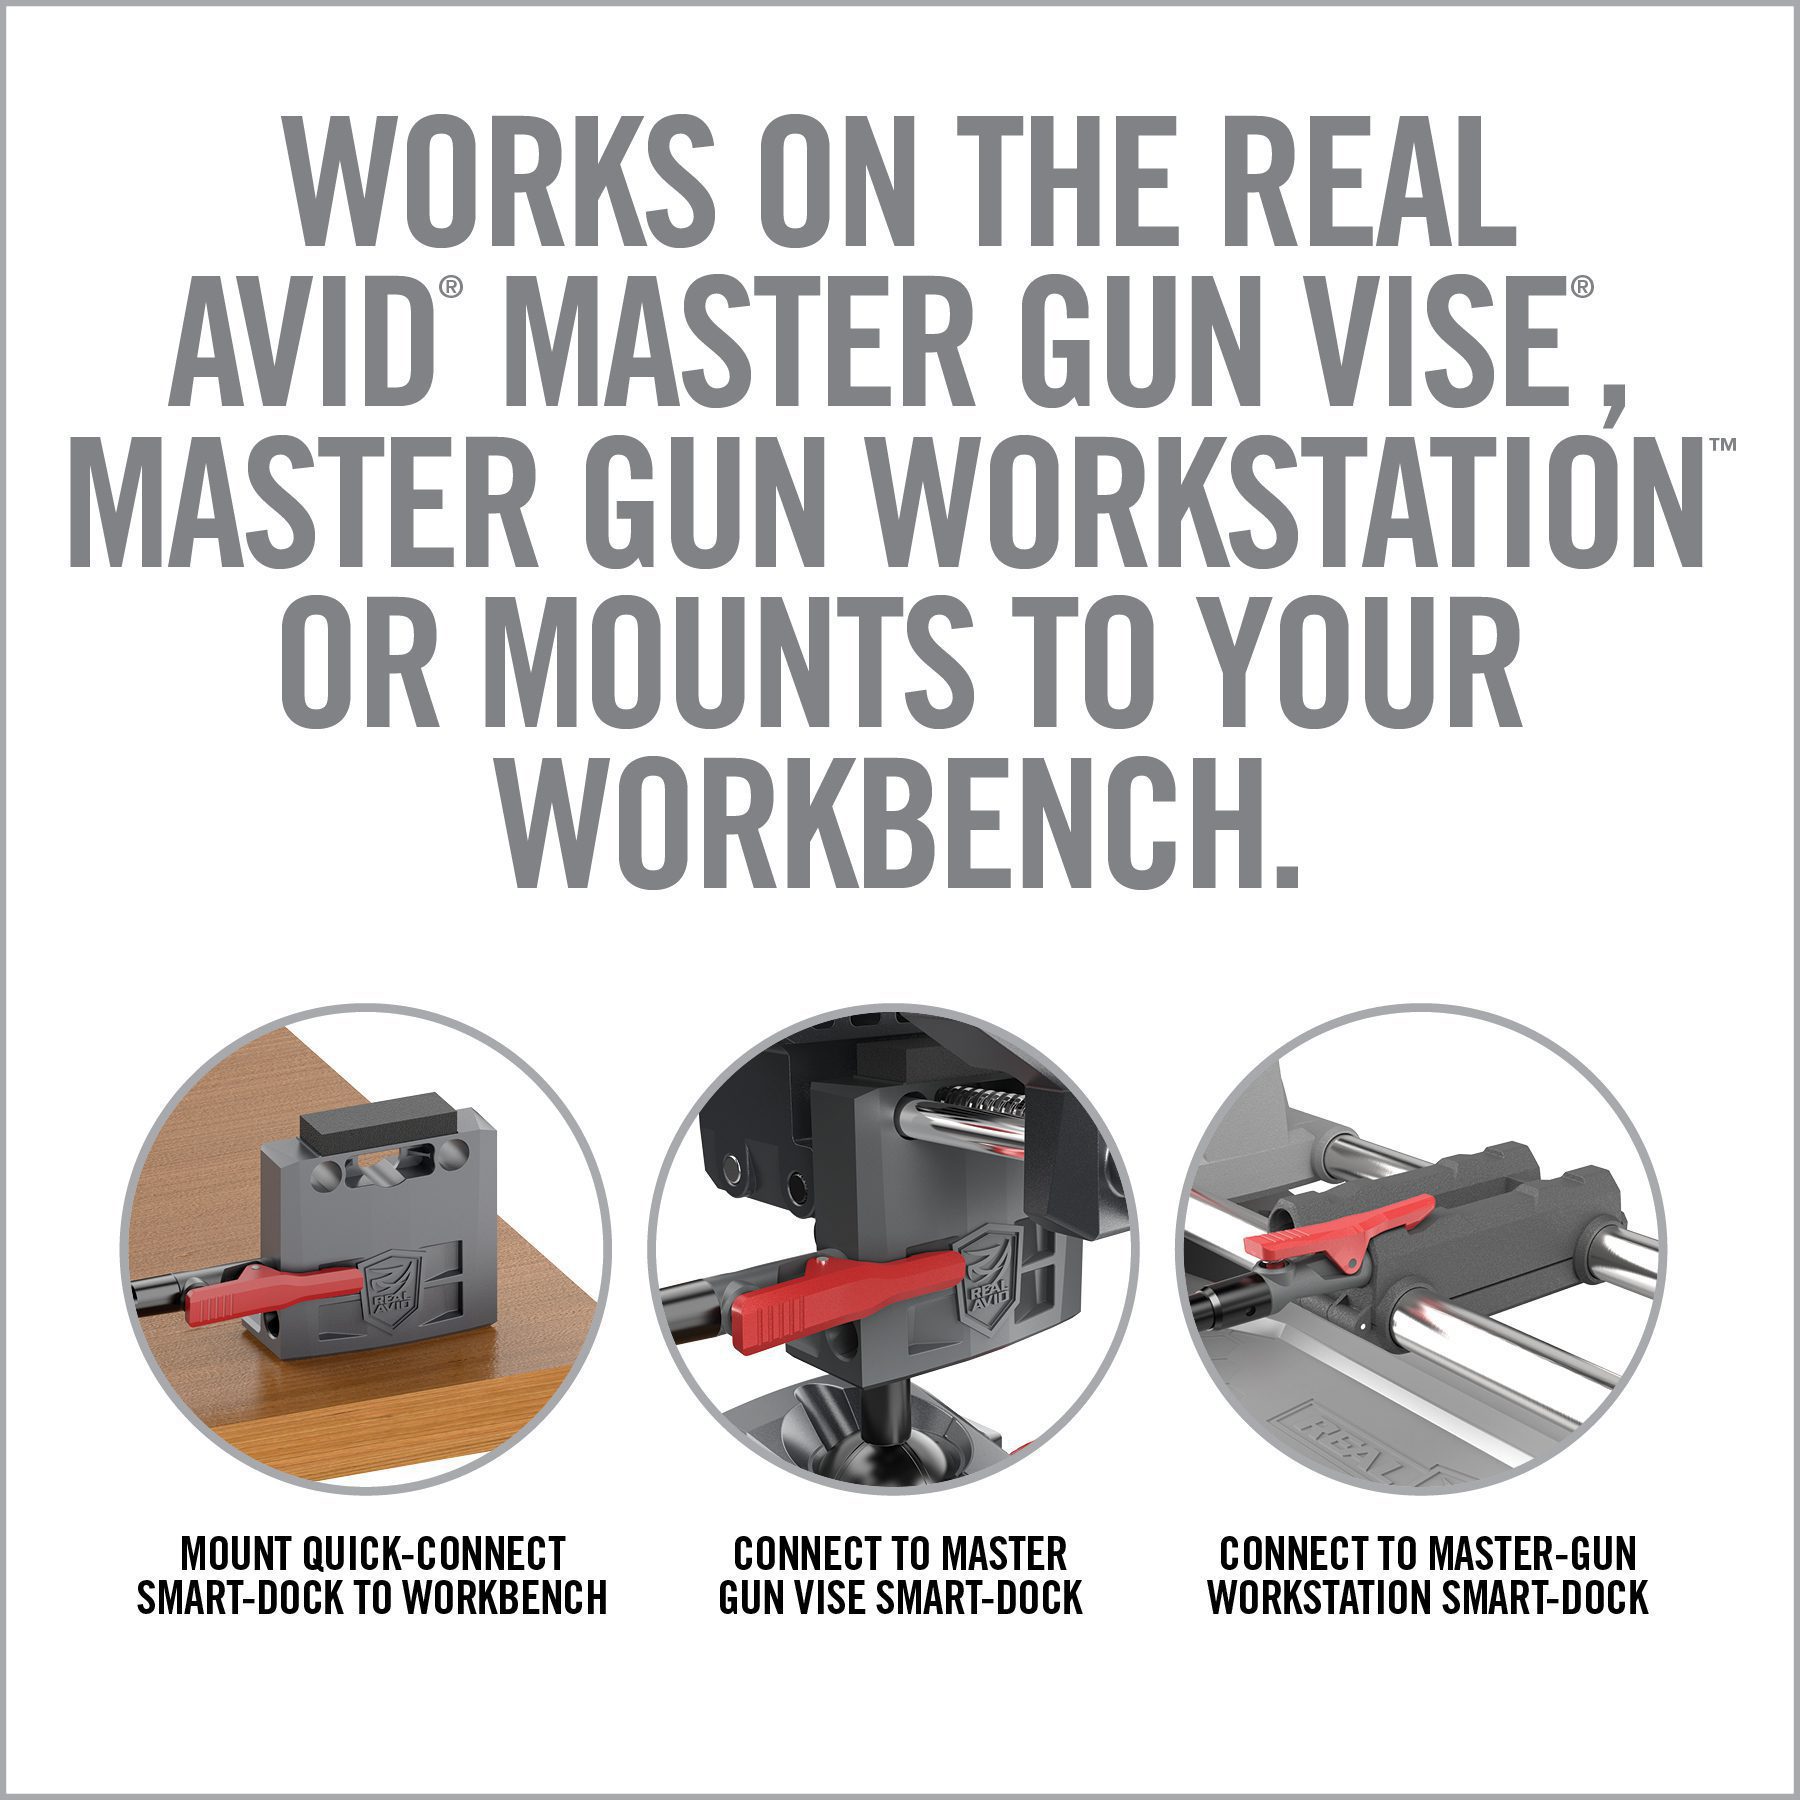 an advertisement for a gun workshop